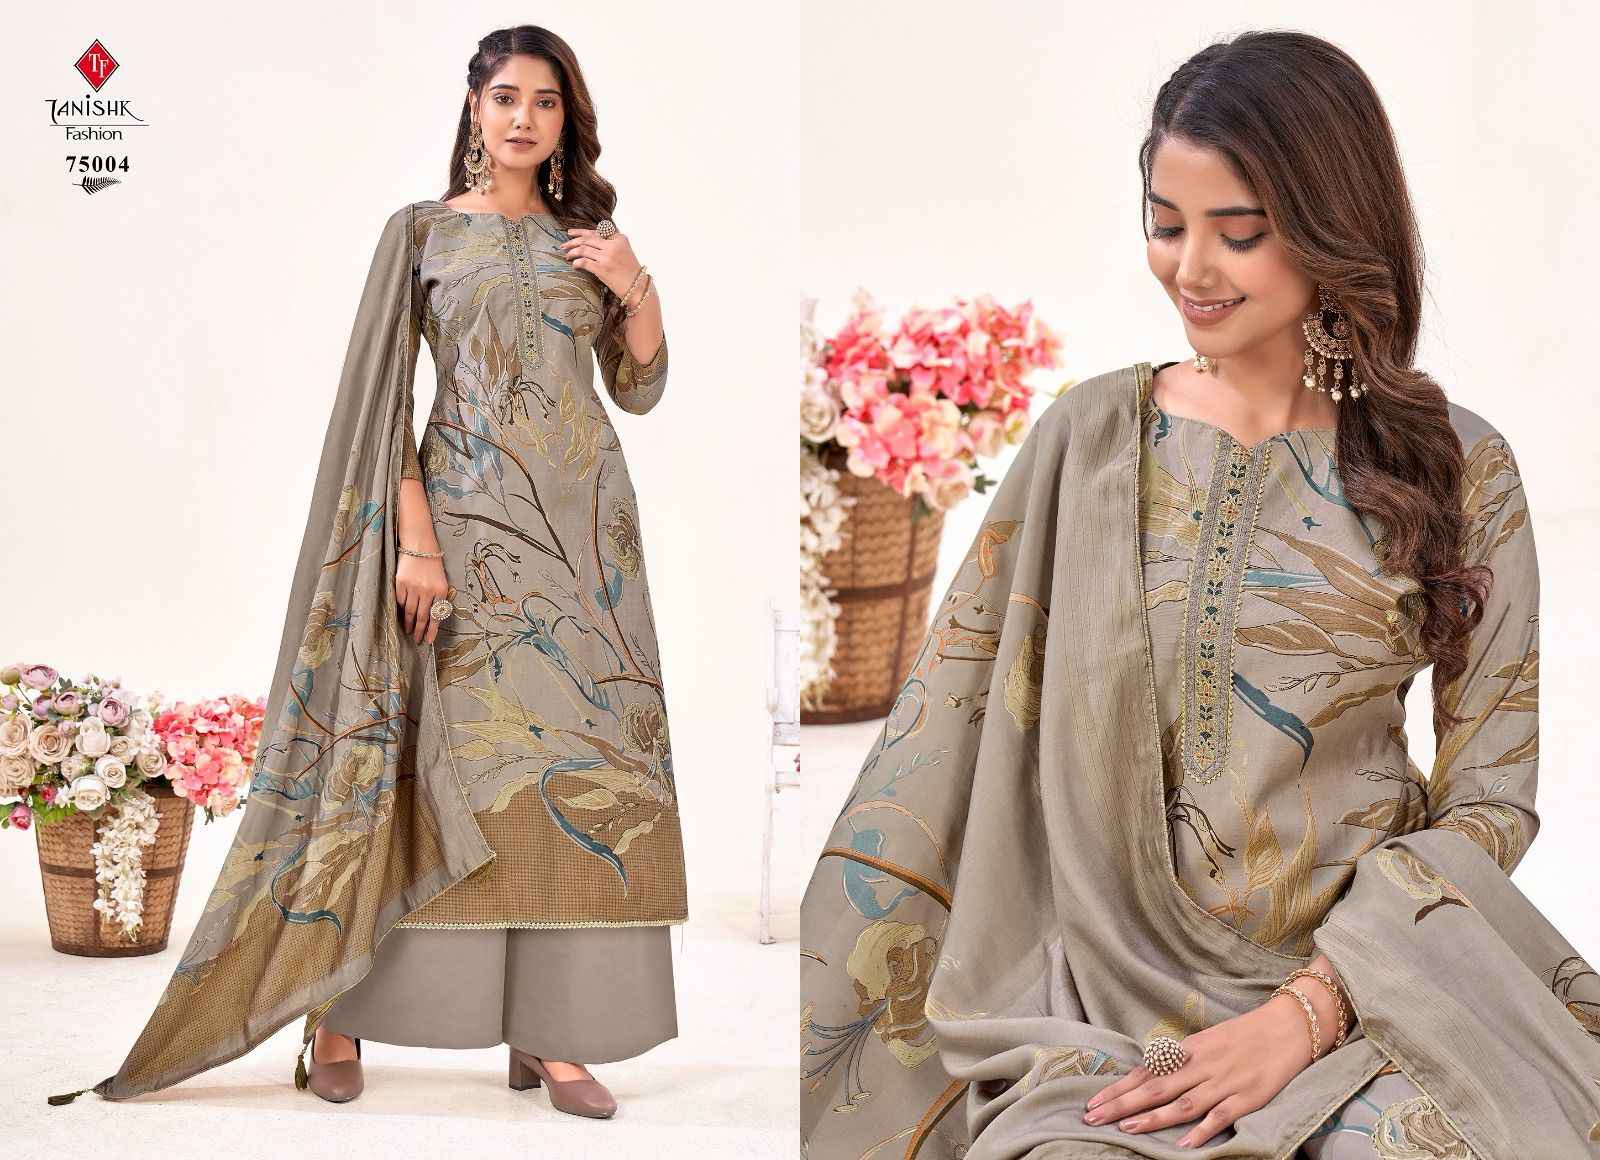 Tanishk Fashion Ikarat Pure Viscous Cotton Dress Material (6 Pc Catalog)